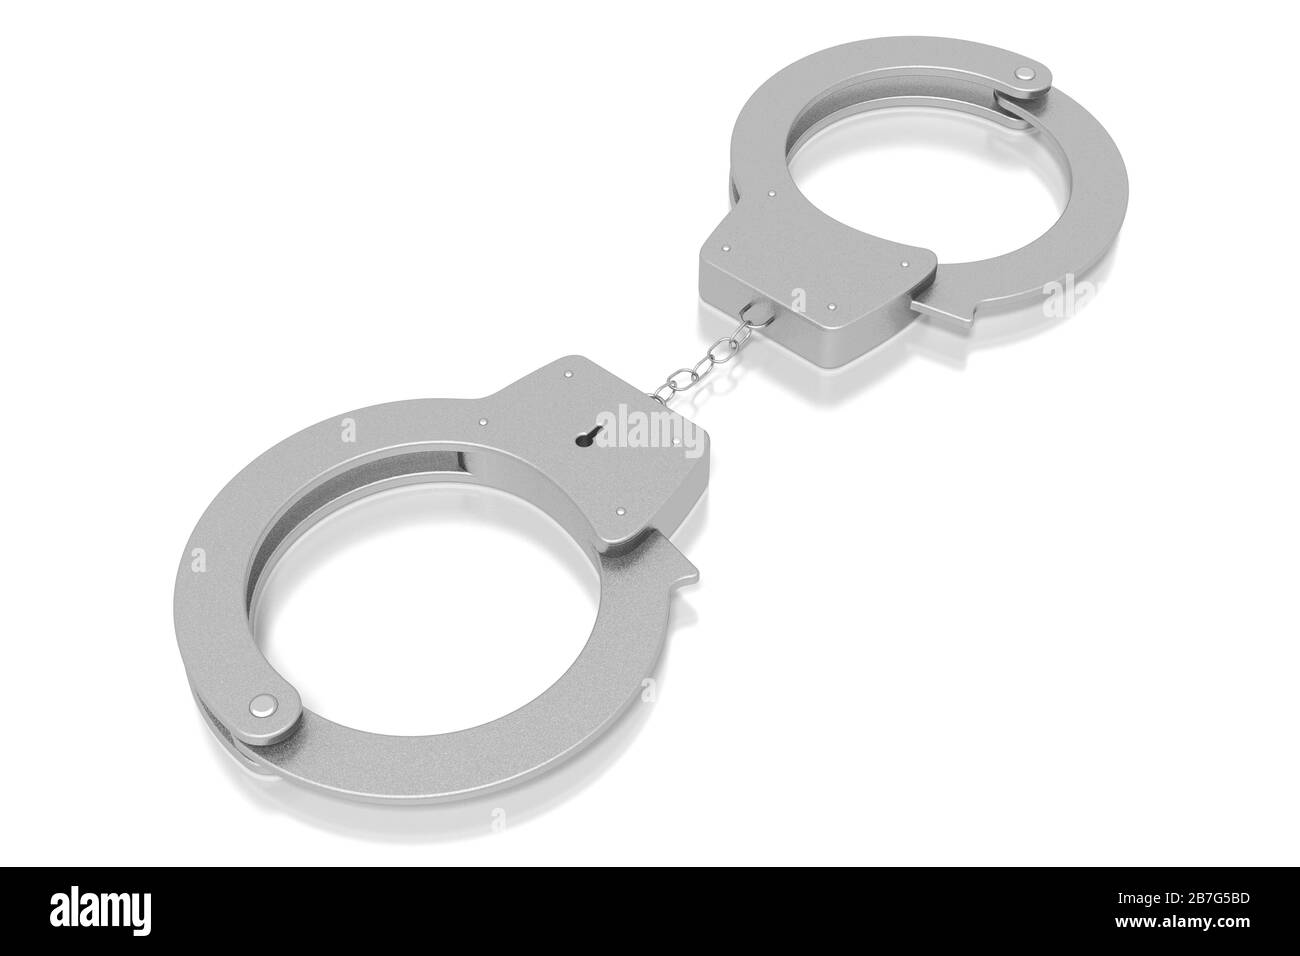 Legge 3D, concetto di crimine - manette isolate su sfondo bianco Foto Stock